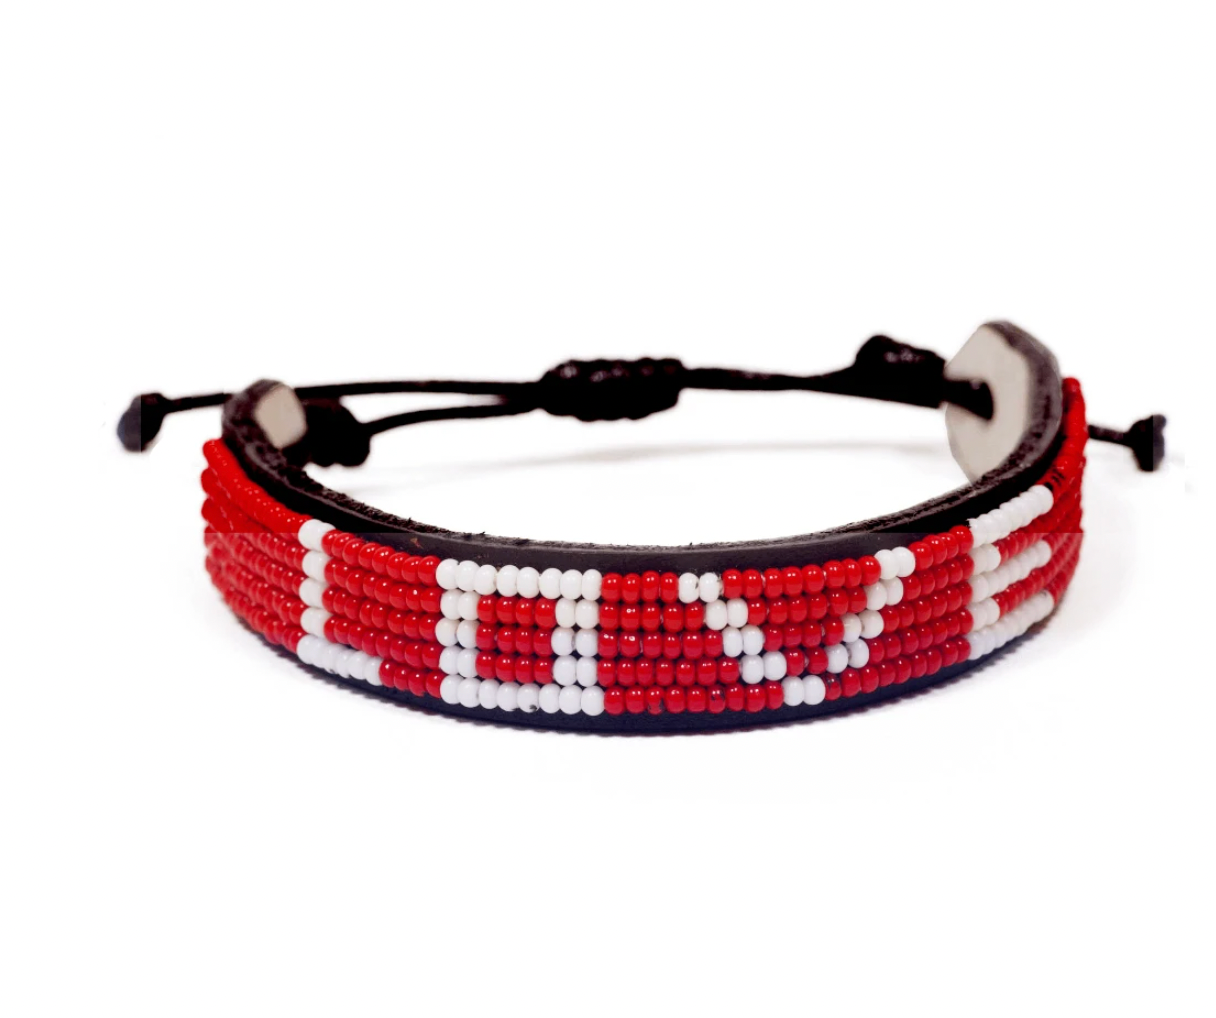 The Original LOVE Bracelet in Red